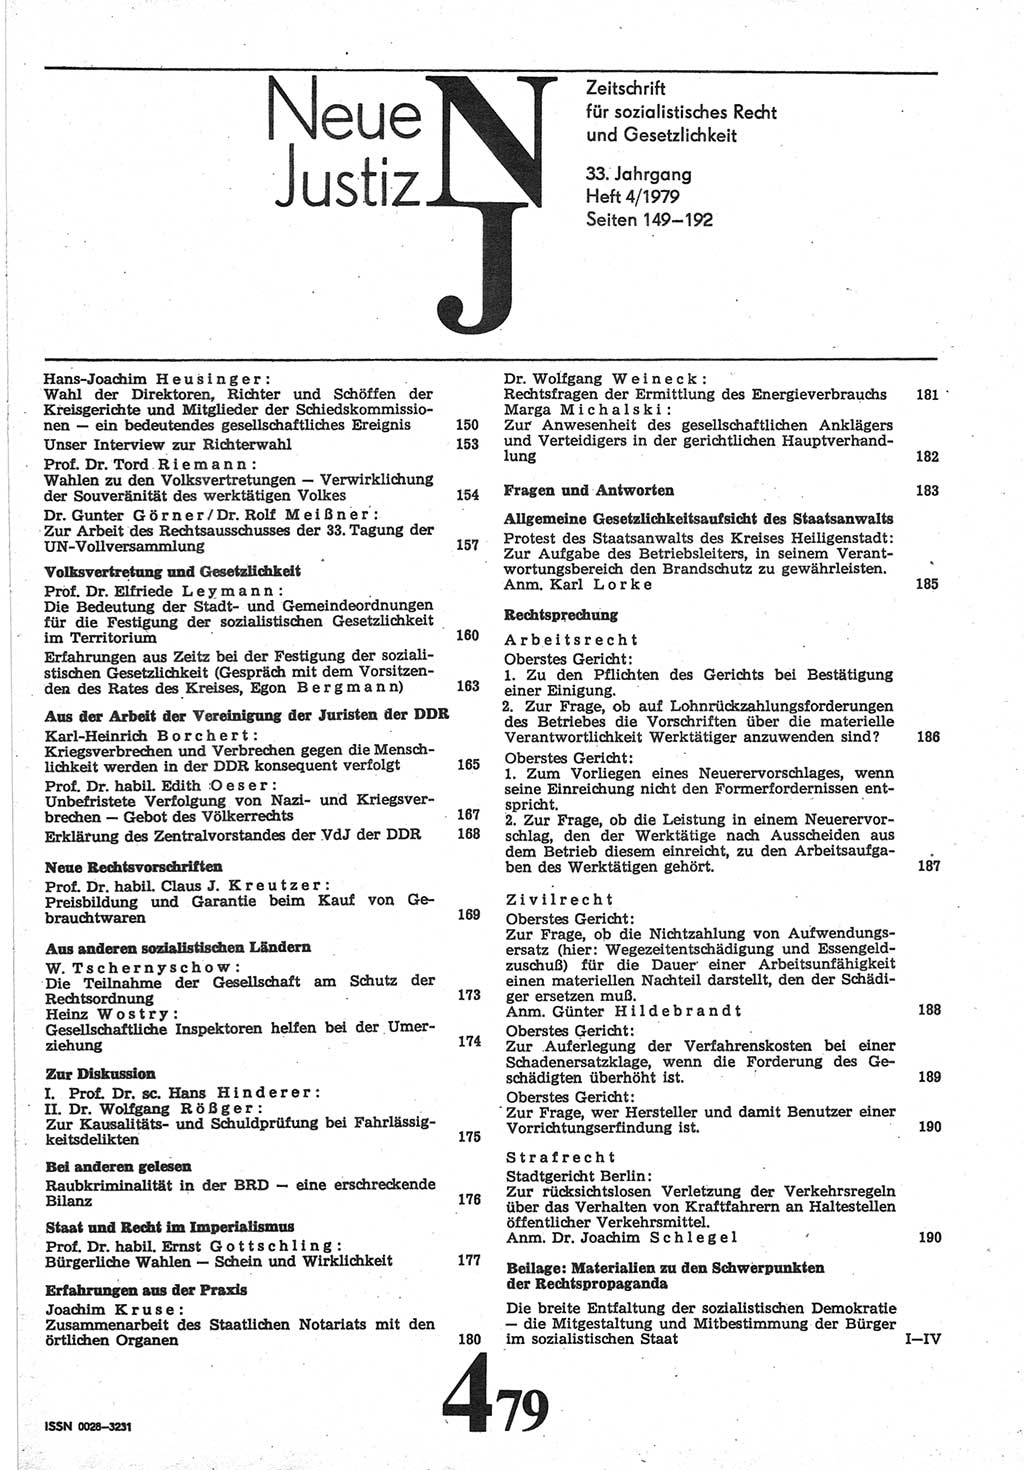 Neue Justiz (NJ), Zeitschrift für sozialistisches Recht und Gesetzlichkeit [Deutsche Demokratische Republik (DDR)], 33. Jahrgang 1979, Seite 149 (NJ DDR 1979, S. 149)